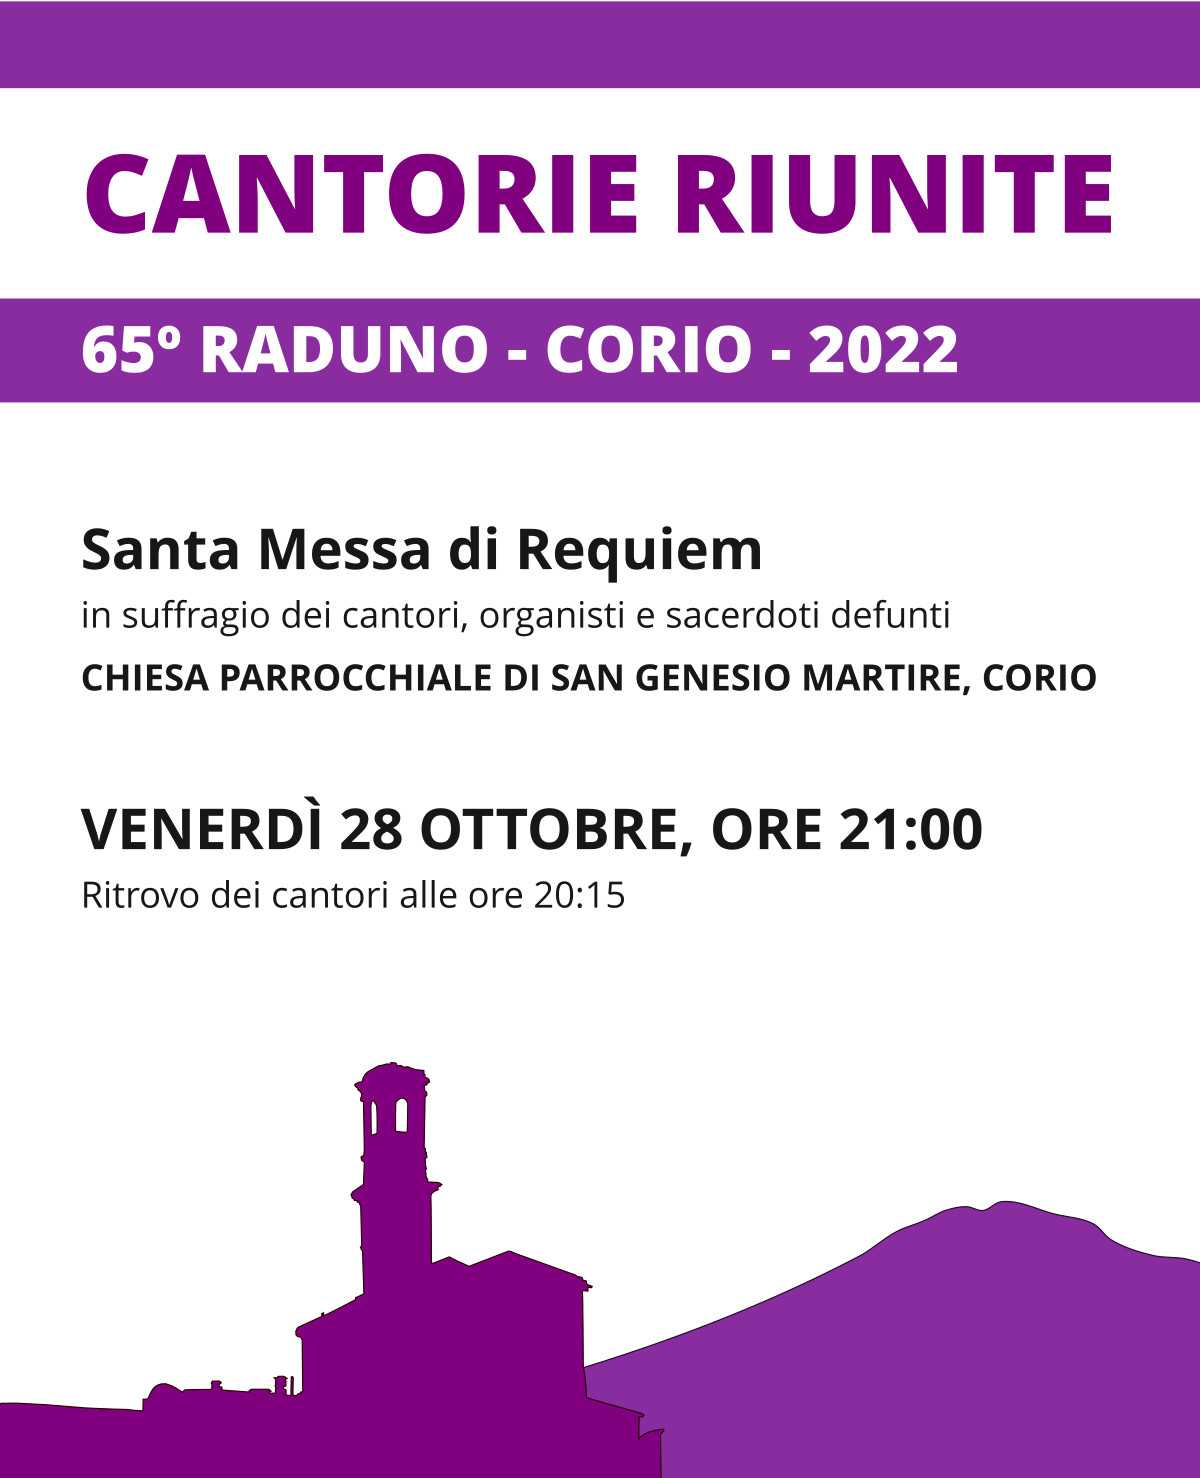 Cantorie Riunite - Corio 2022